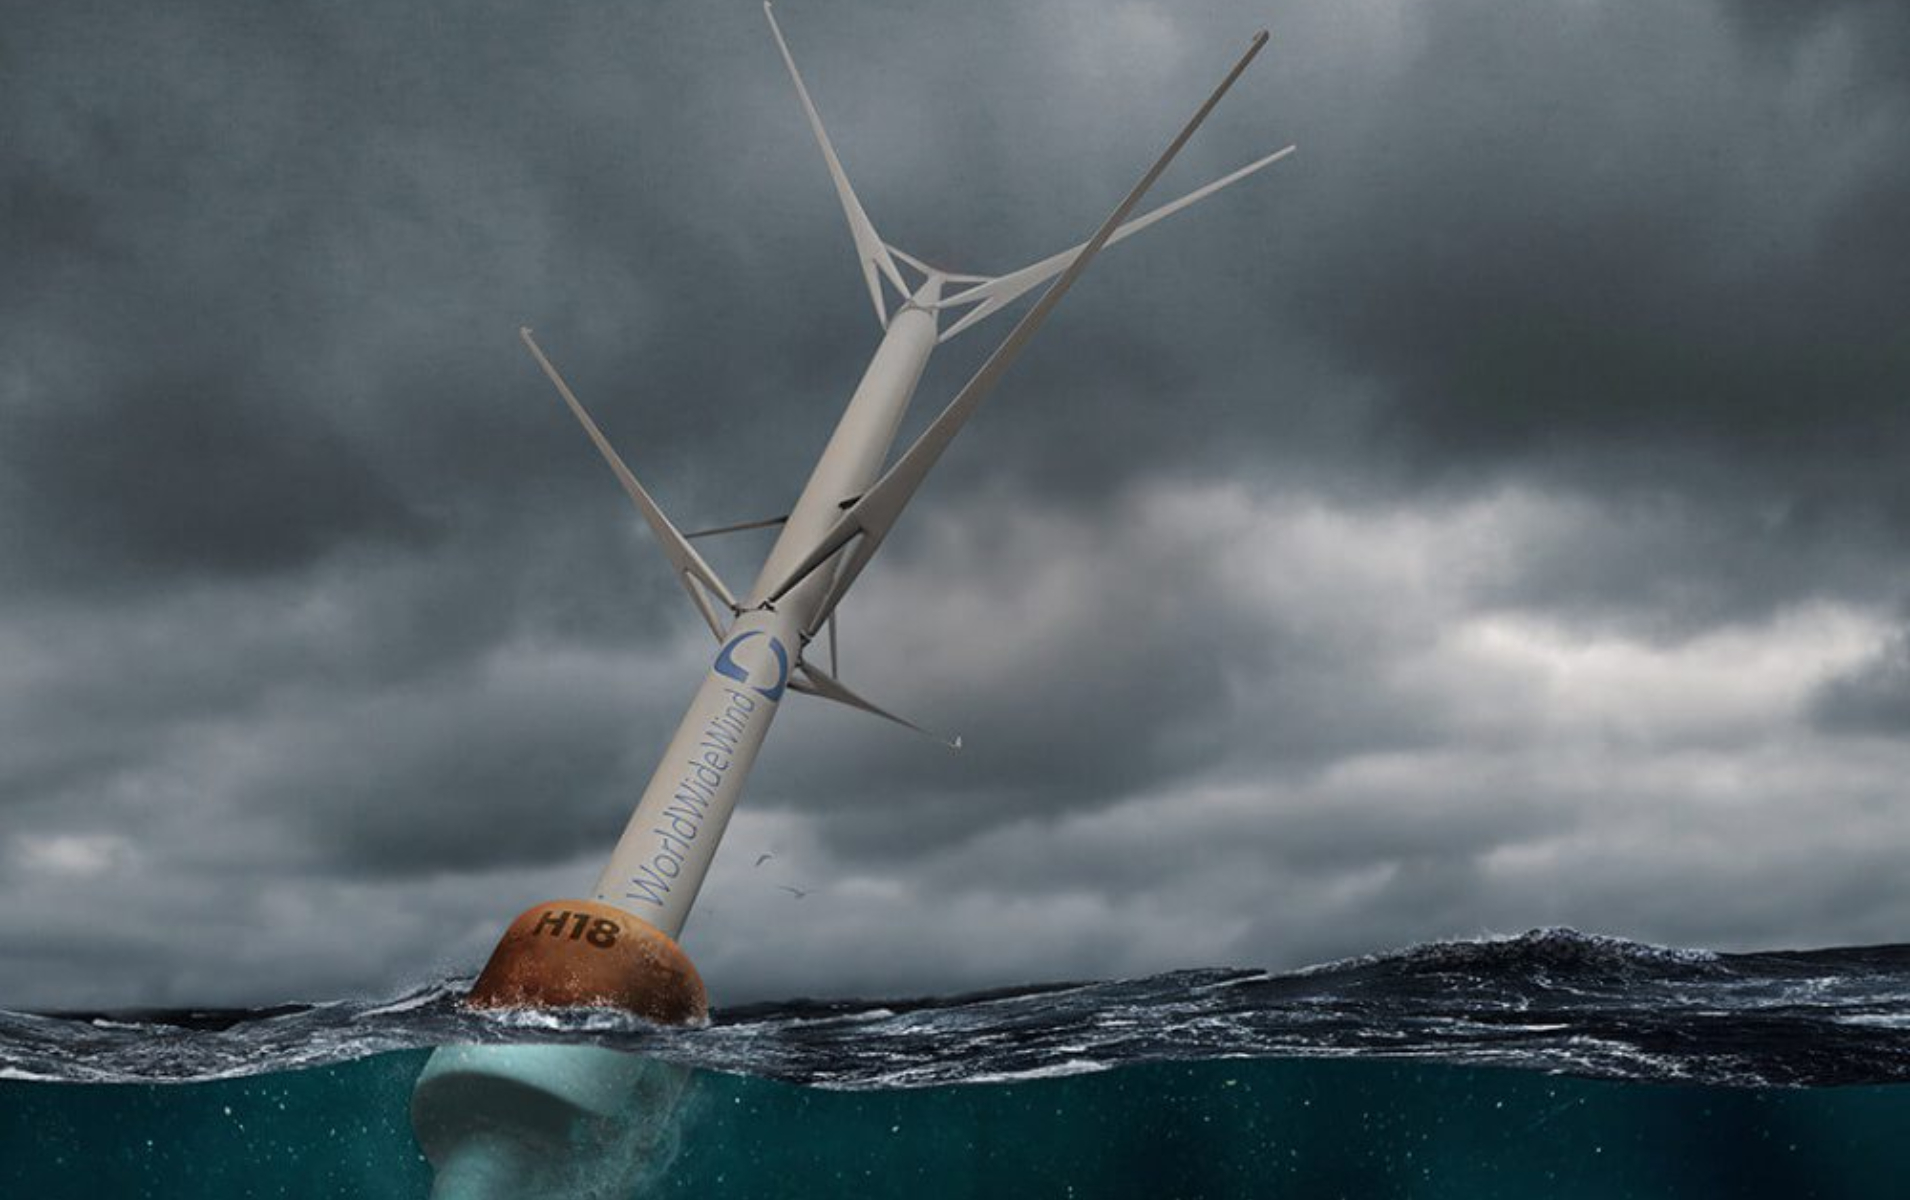 【#Energy】挪威再生能源公司開發垂直式浮動風力發電機省去笨重機體、大幅增加發電量，並採用低碳再生鋁材製成可回收部件